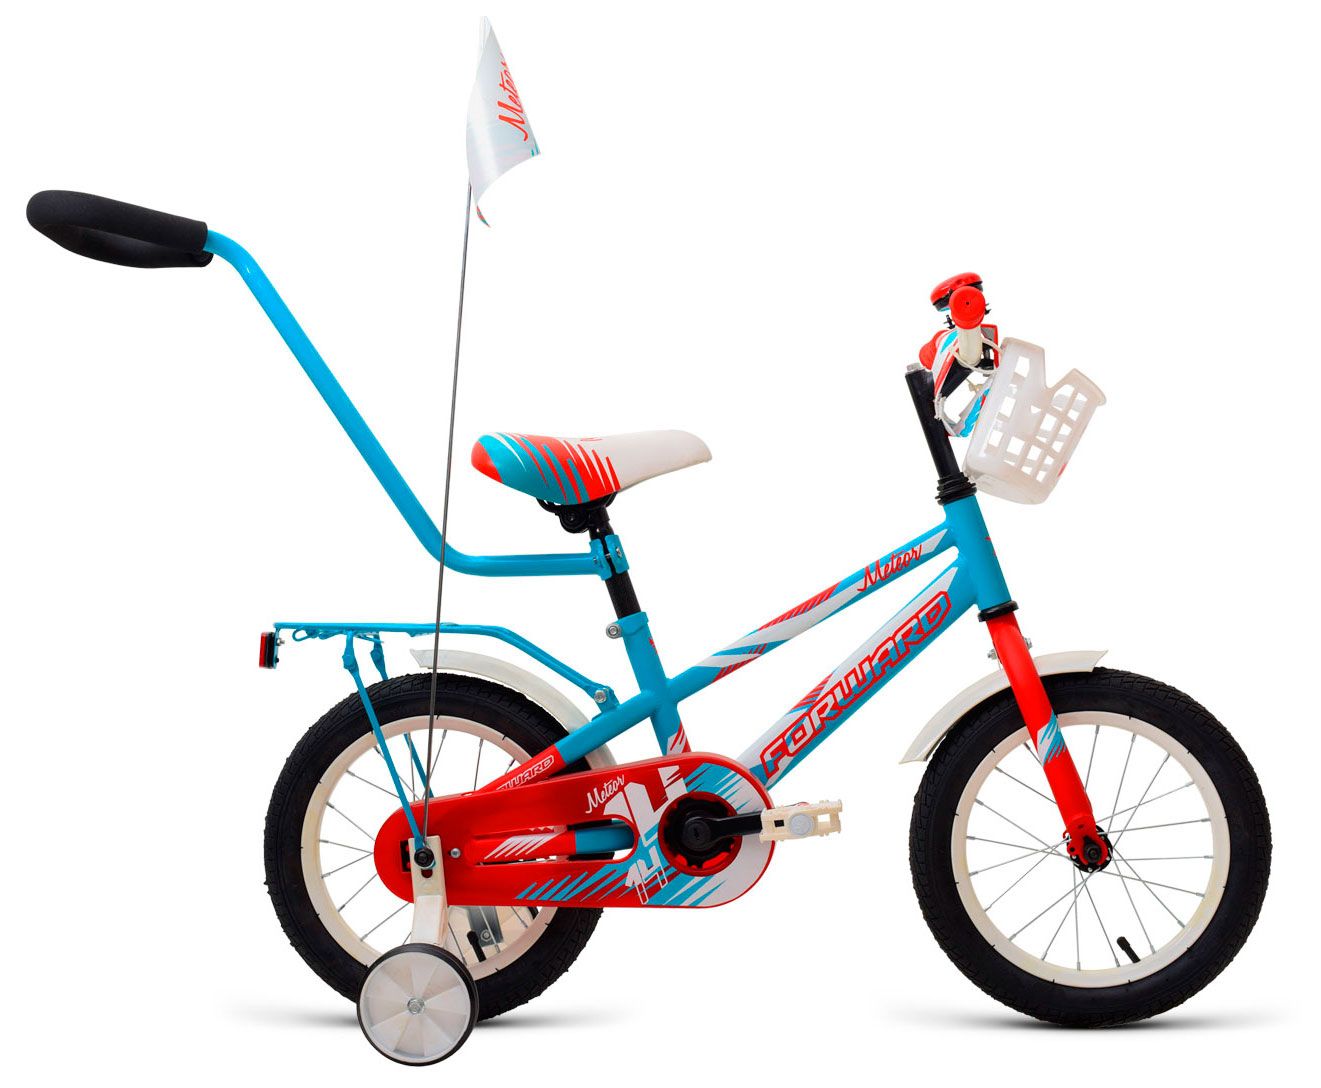  Отзывы о Трехколесный детский велосипед Forward Meteor 14 2018